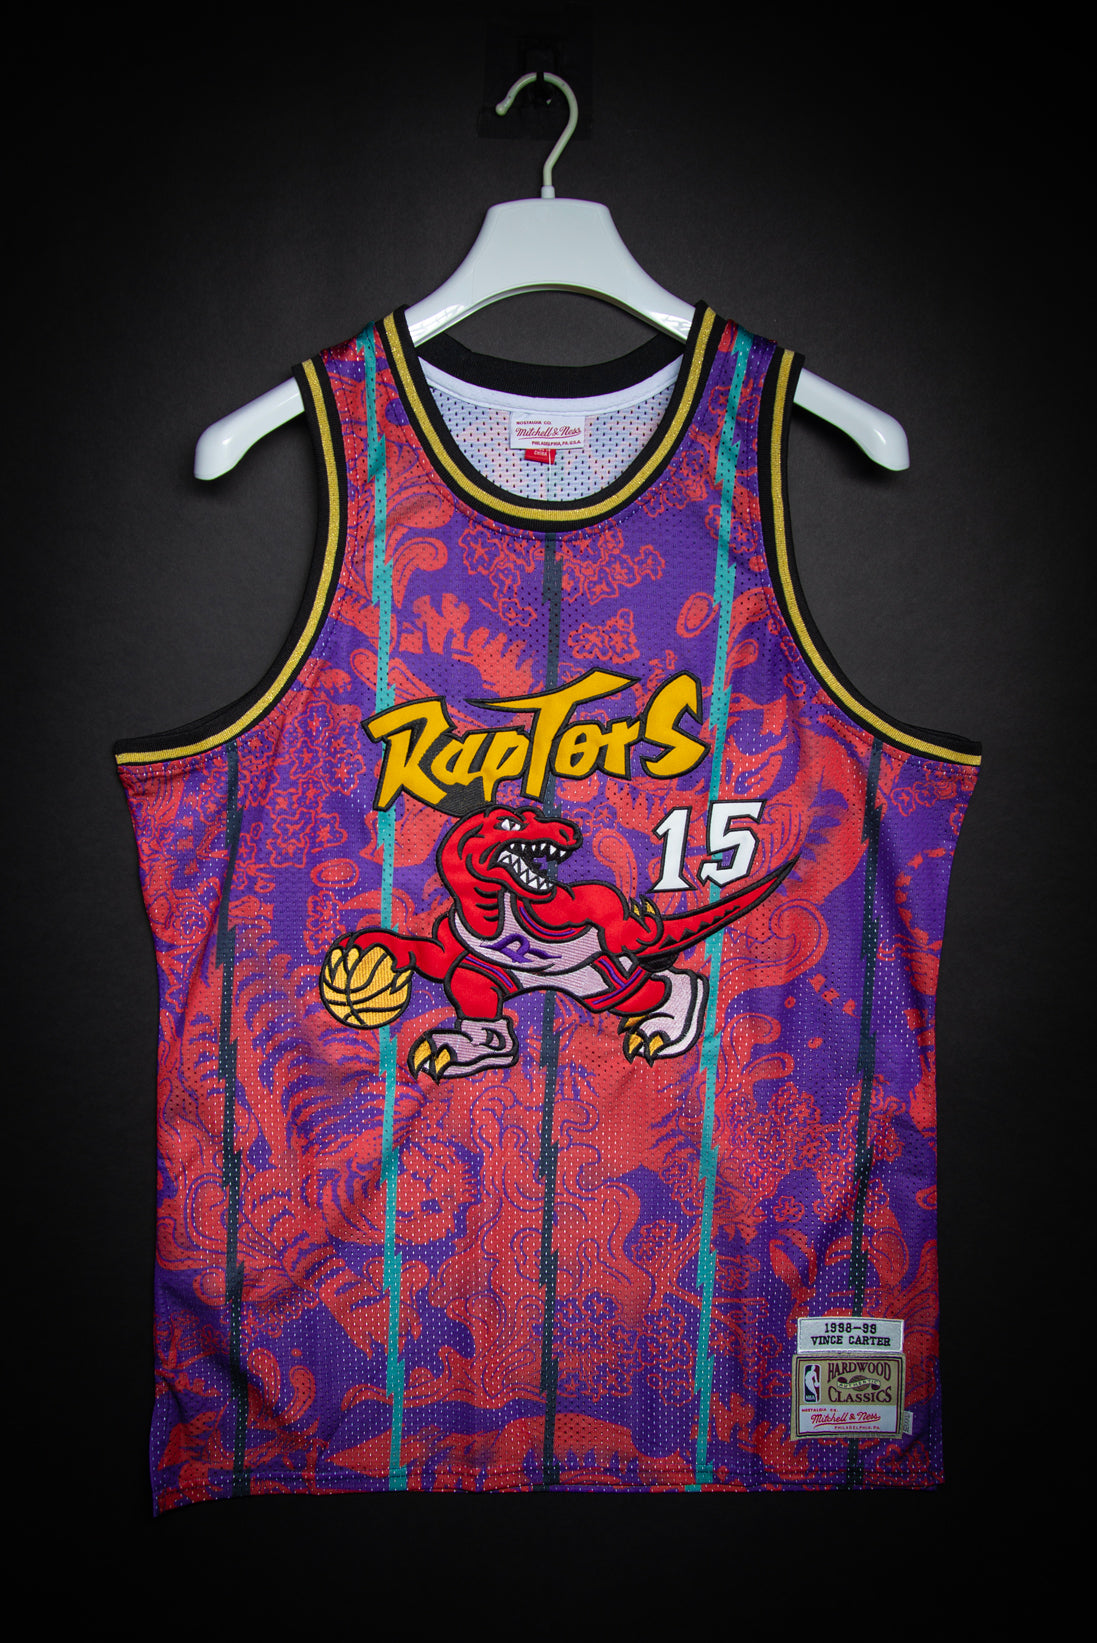 1998 raptors jersey